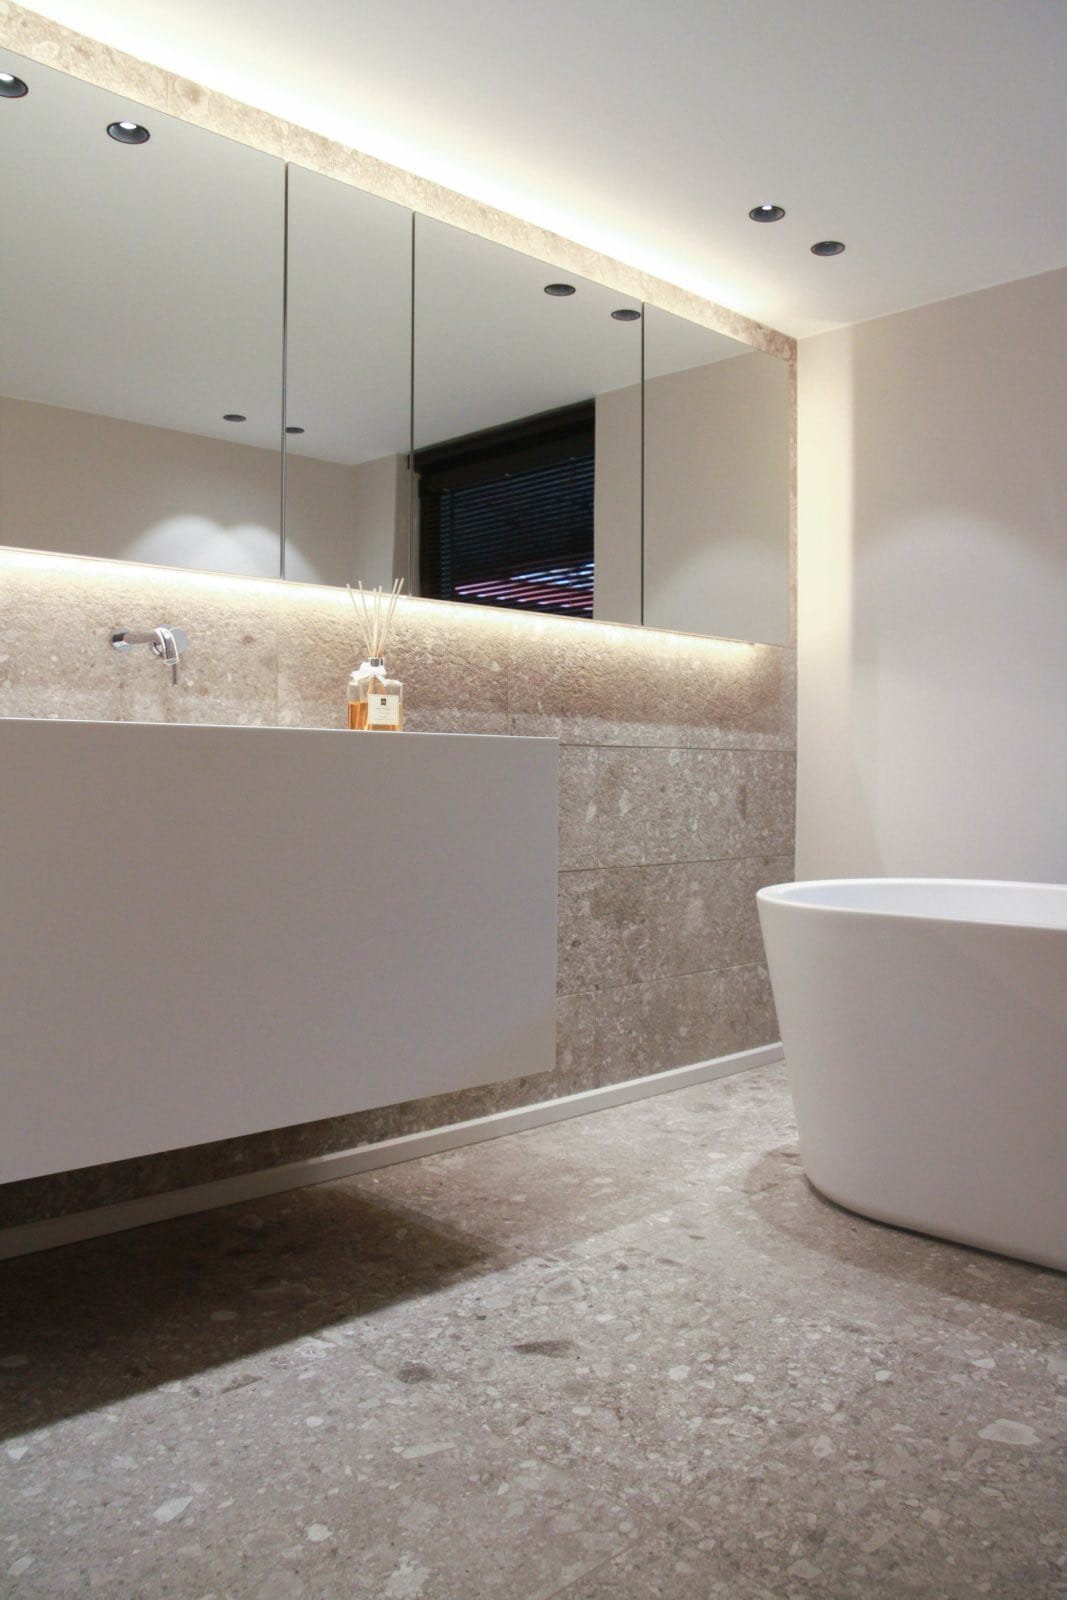 cuarto de baño moderno con terrazzo en suelos y paredes y muebles blancos